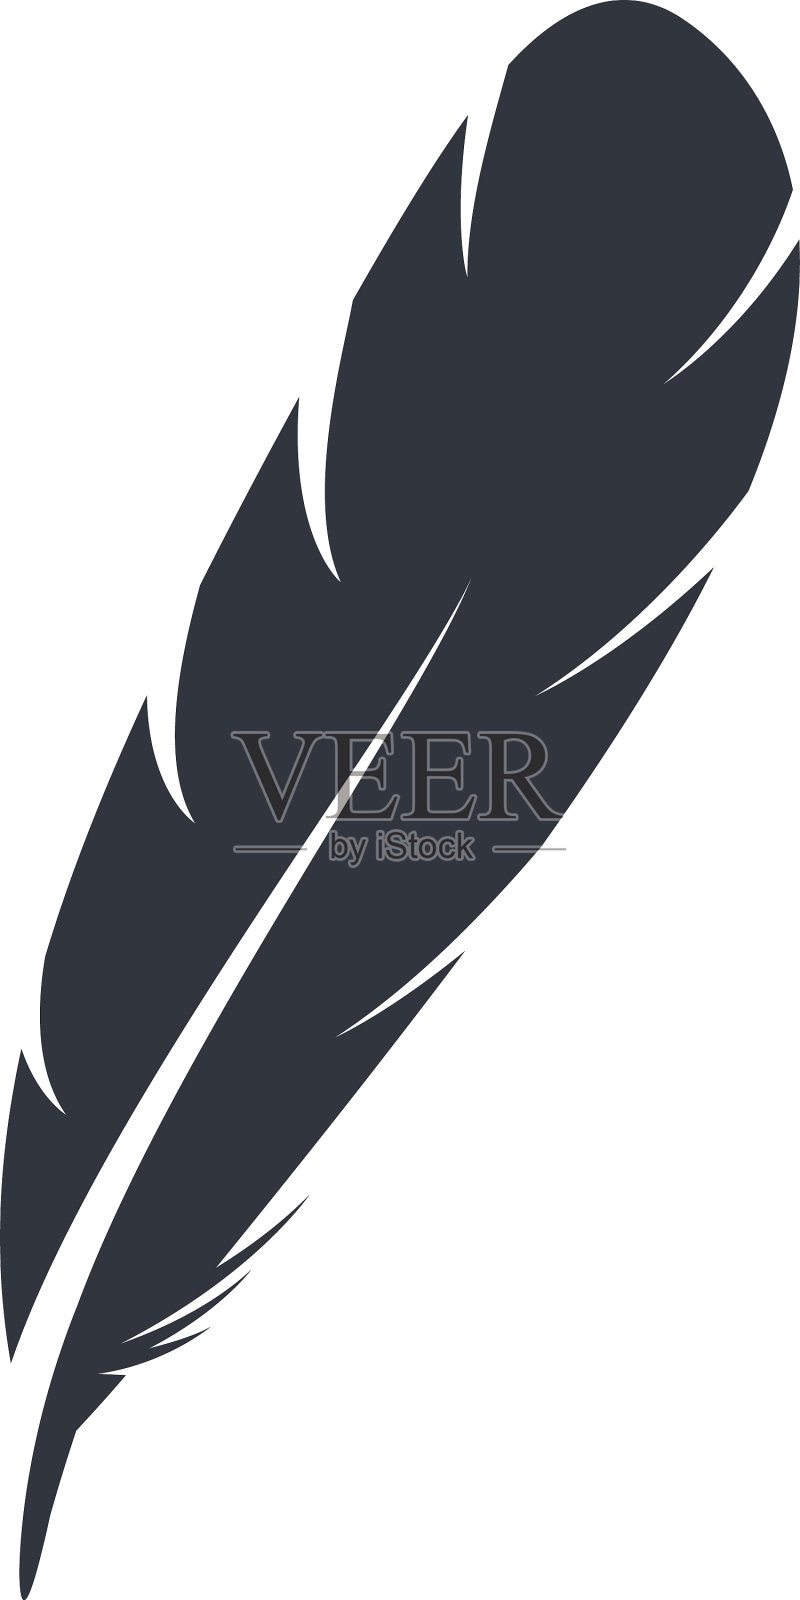 羽毛象征符号设计元素图片